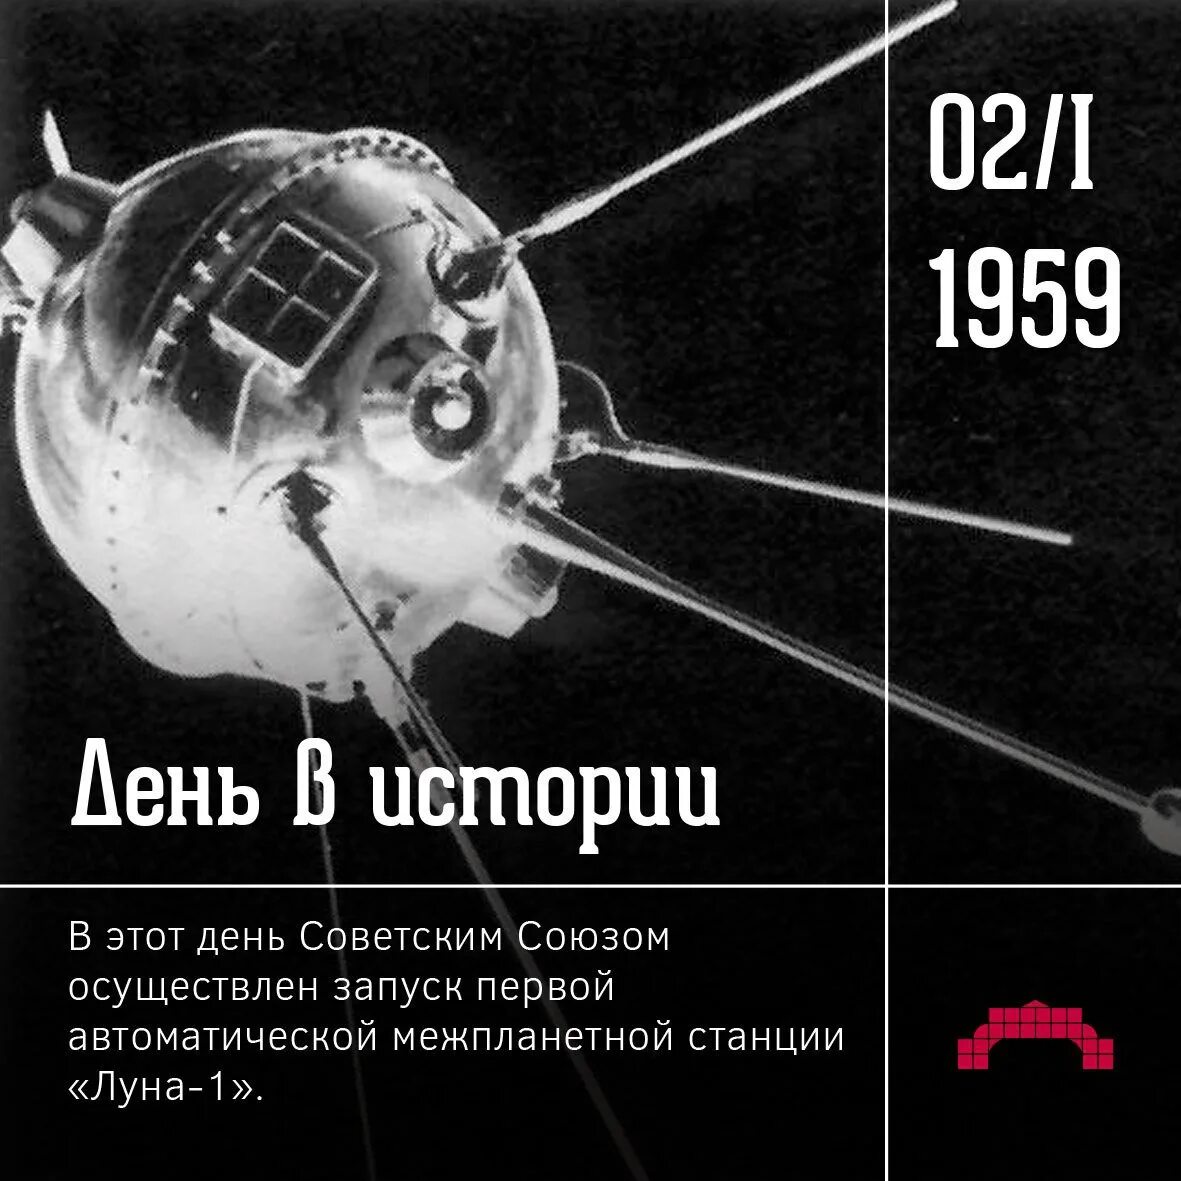 Второй советский спутник. 2 Января 1959 года запущена первая Советская межпланетная станция Луна-1. Луна-1 автоматическая межпланетная станция. Запуск первой автоматической межпланетной станции «Луна-1». АМС Луна 2.